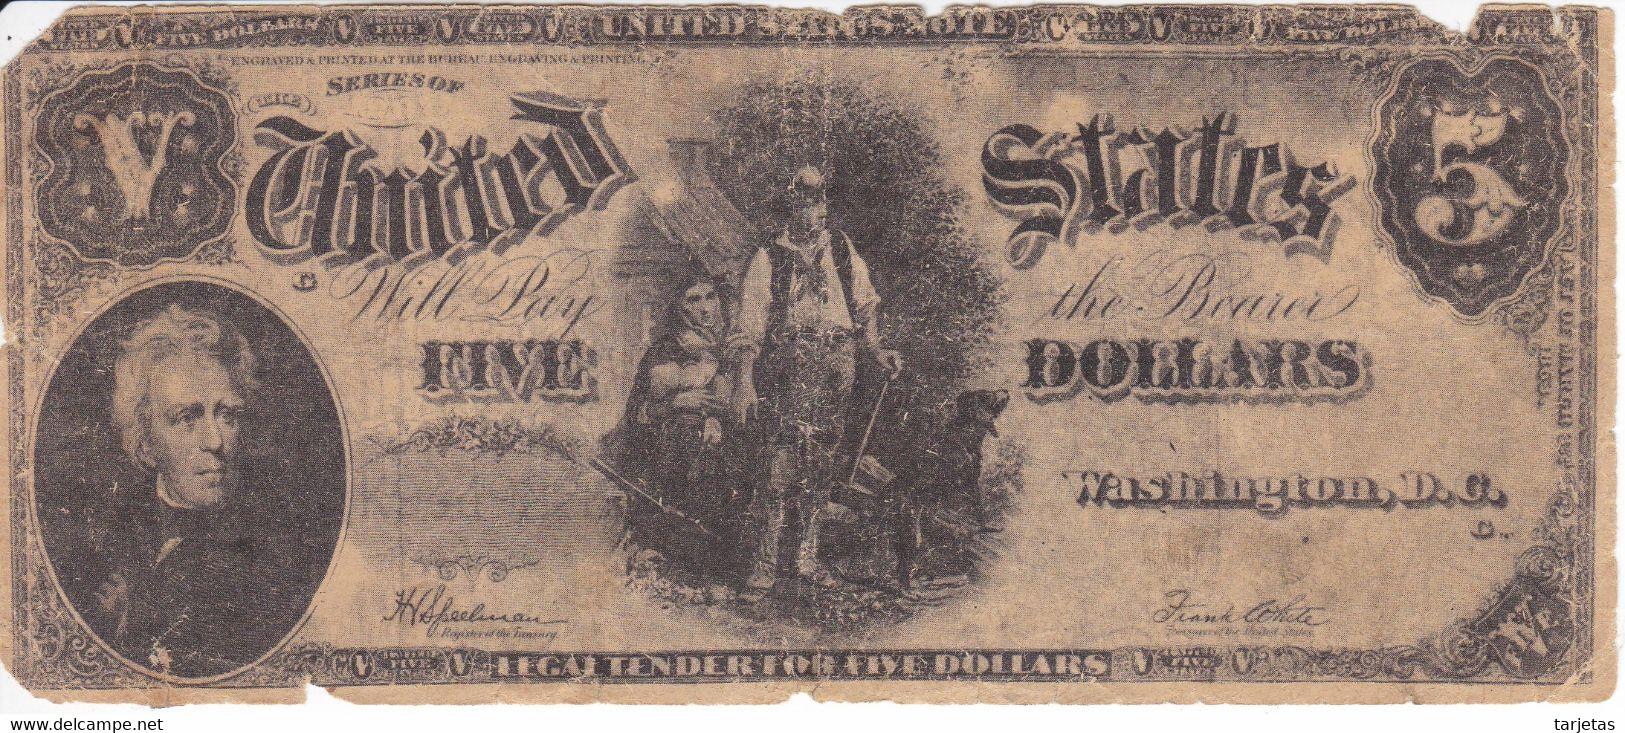 ¡¡FALSO DE EPOCA!! BILLETE DE ESTADOS UNIDOS DE 5 DÓLLARS DEL AÑO 1907 (BANKNOTE) - United States Notes (1862-1923)